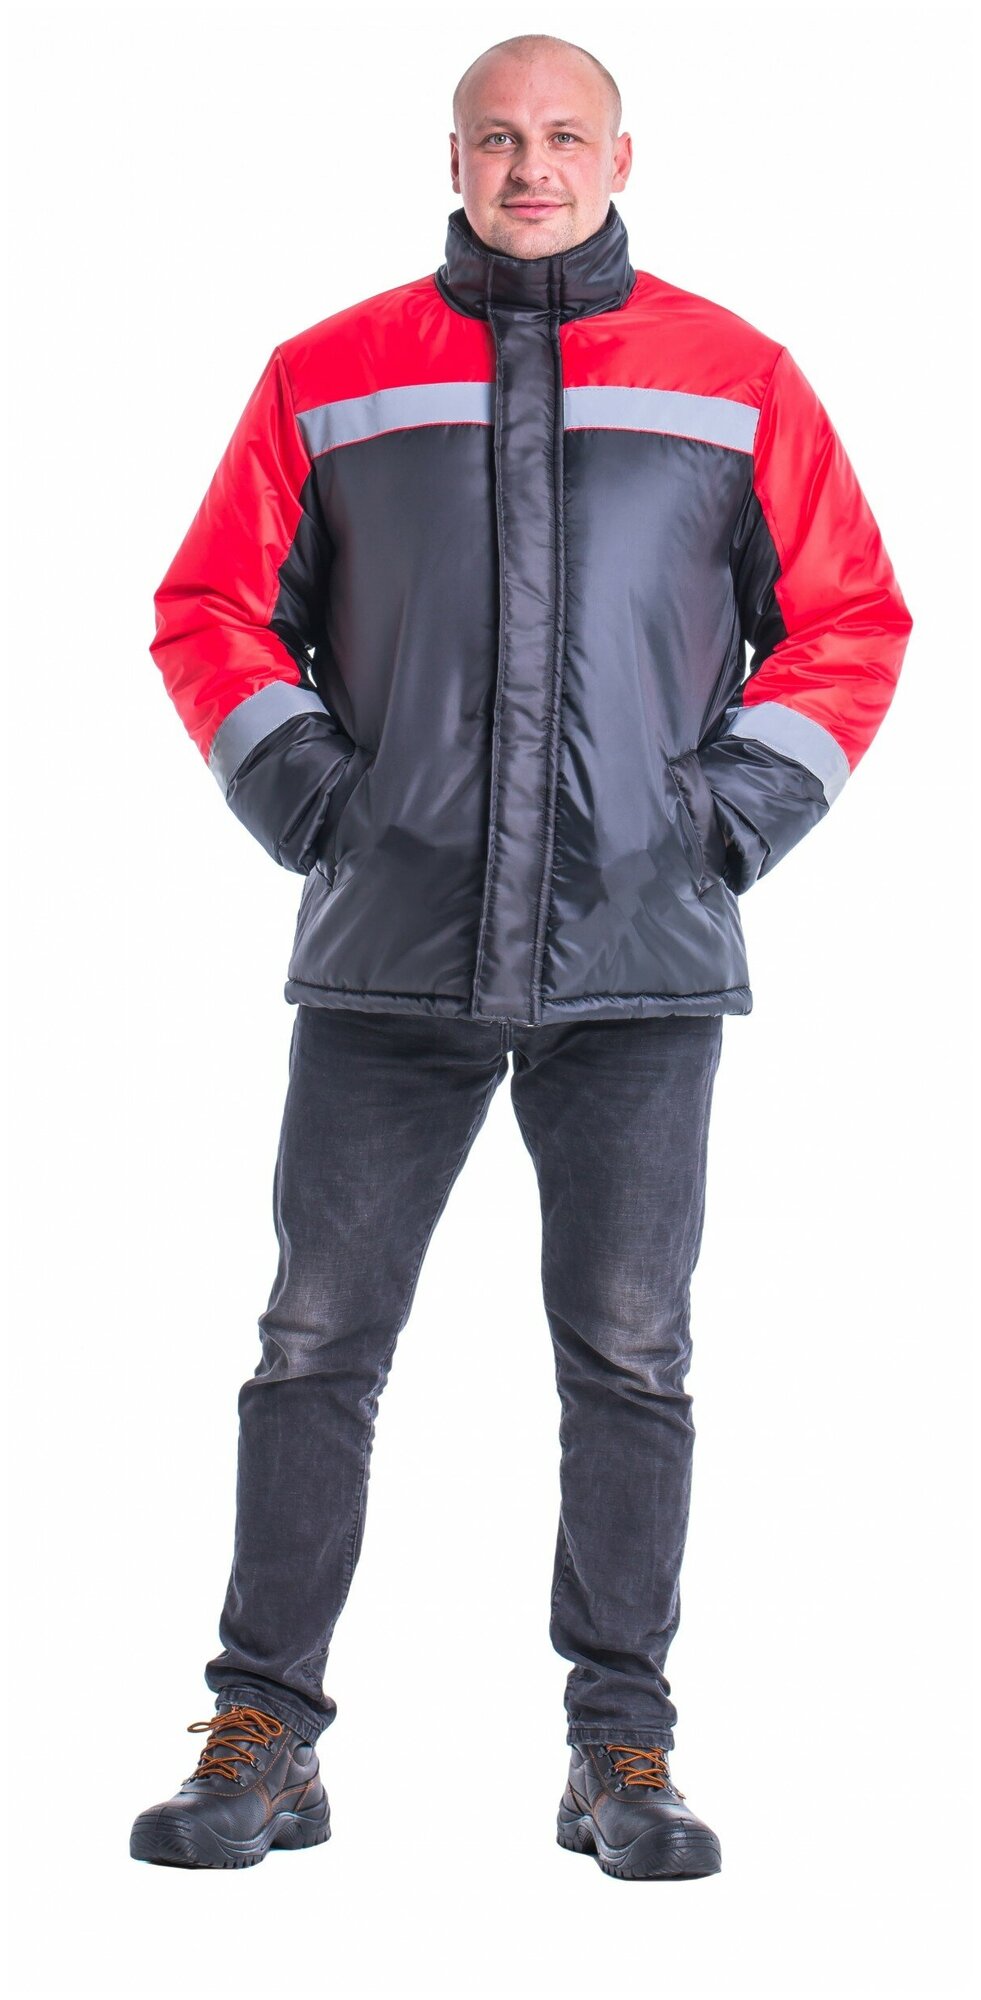 Куртка утепленная "Гастарбайтер" черная с красной. Размер:120-124. Рост:170-176